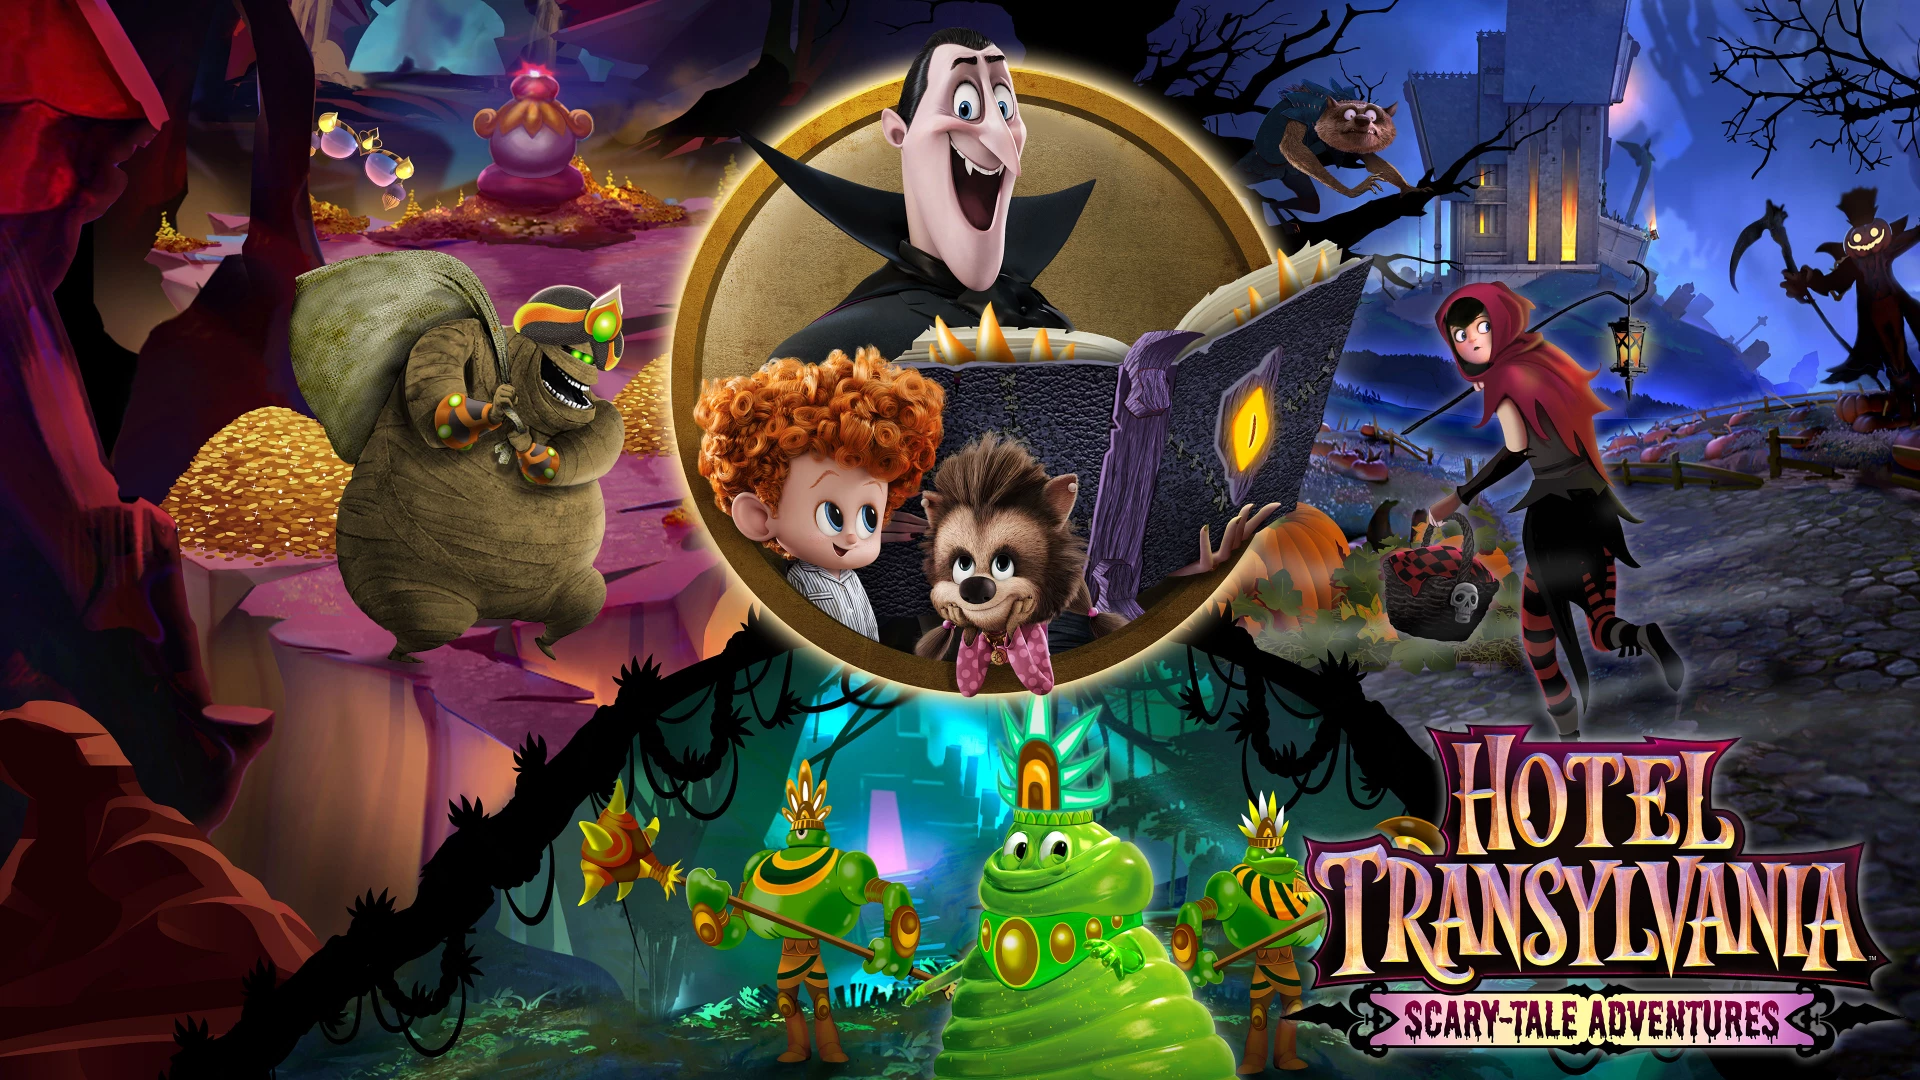 Hotel Transylvania Scary-Tale Adventures voor de Nintendo Switch preorder plaatsen op nedgame.nl